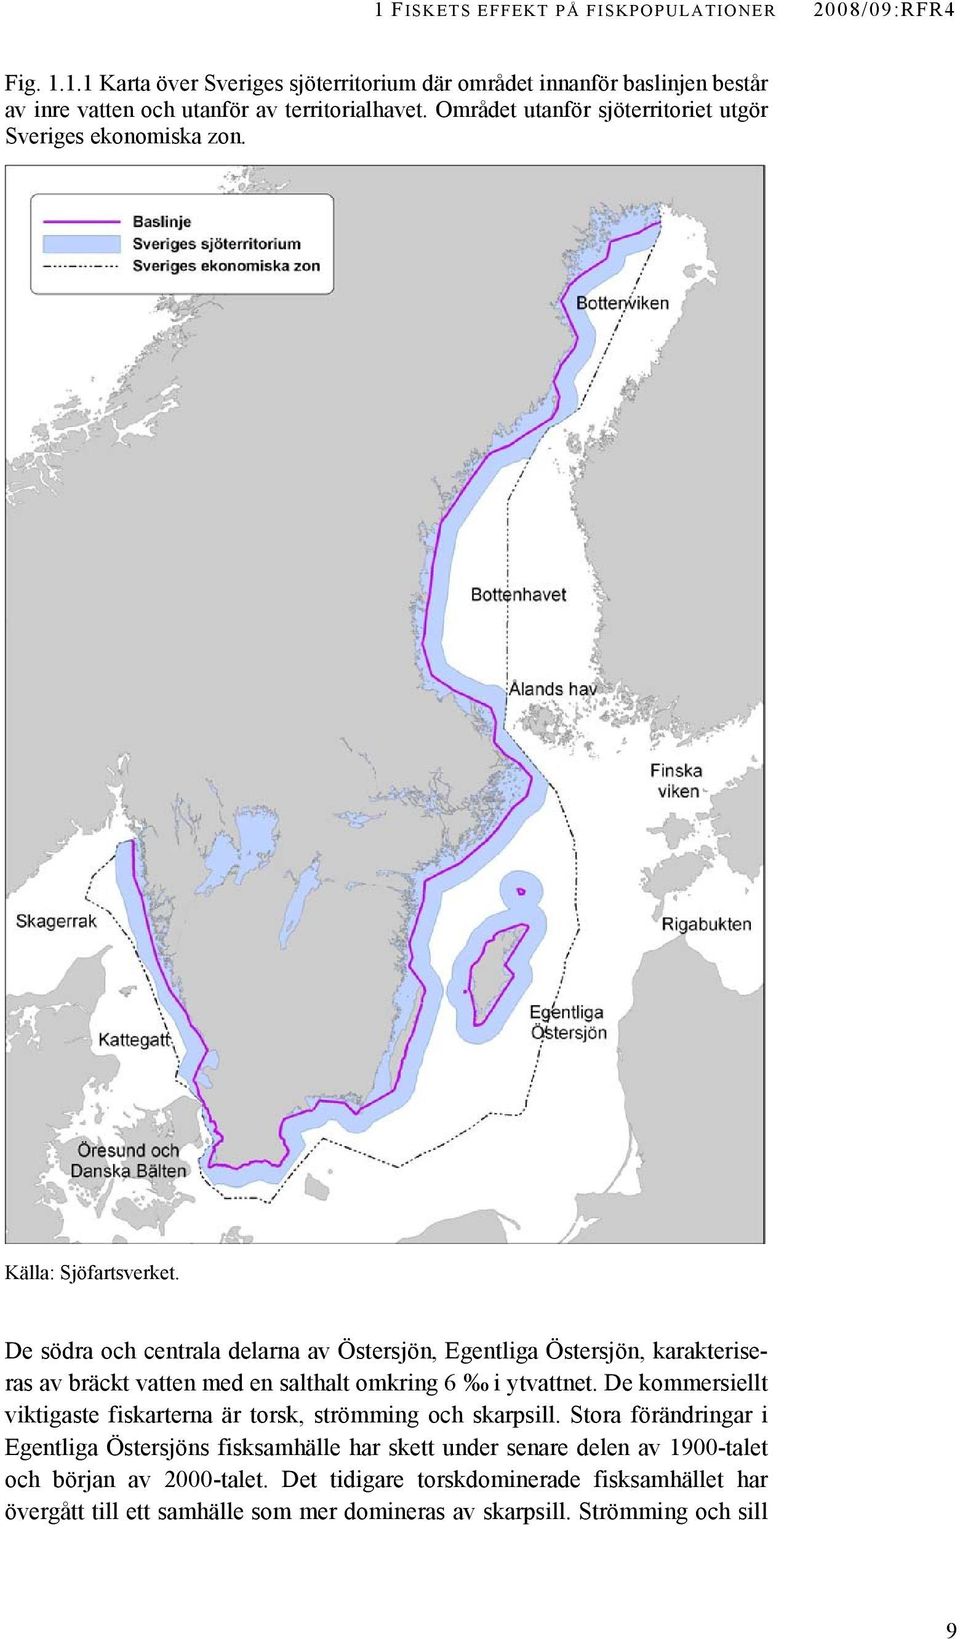 De södra och centrala delarna av Östersjön, Egentliga Östersjön, karakteriseras av bräckt vatten med en salthalt omkring 6 i ytvattnet.